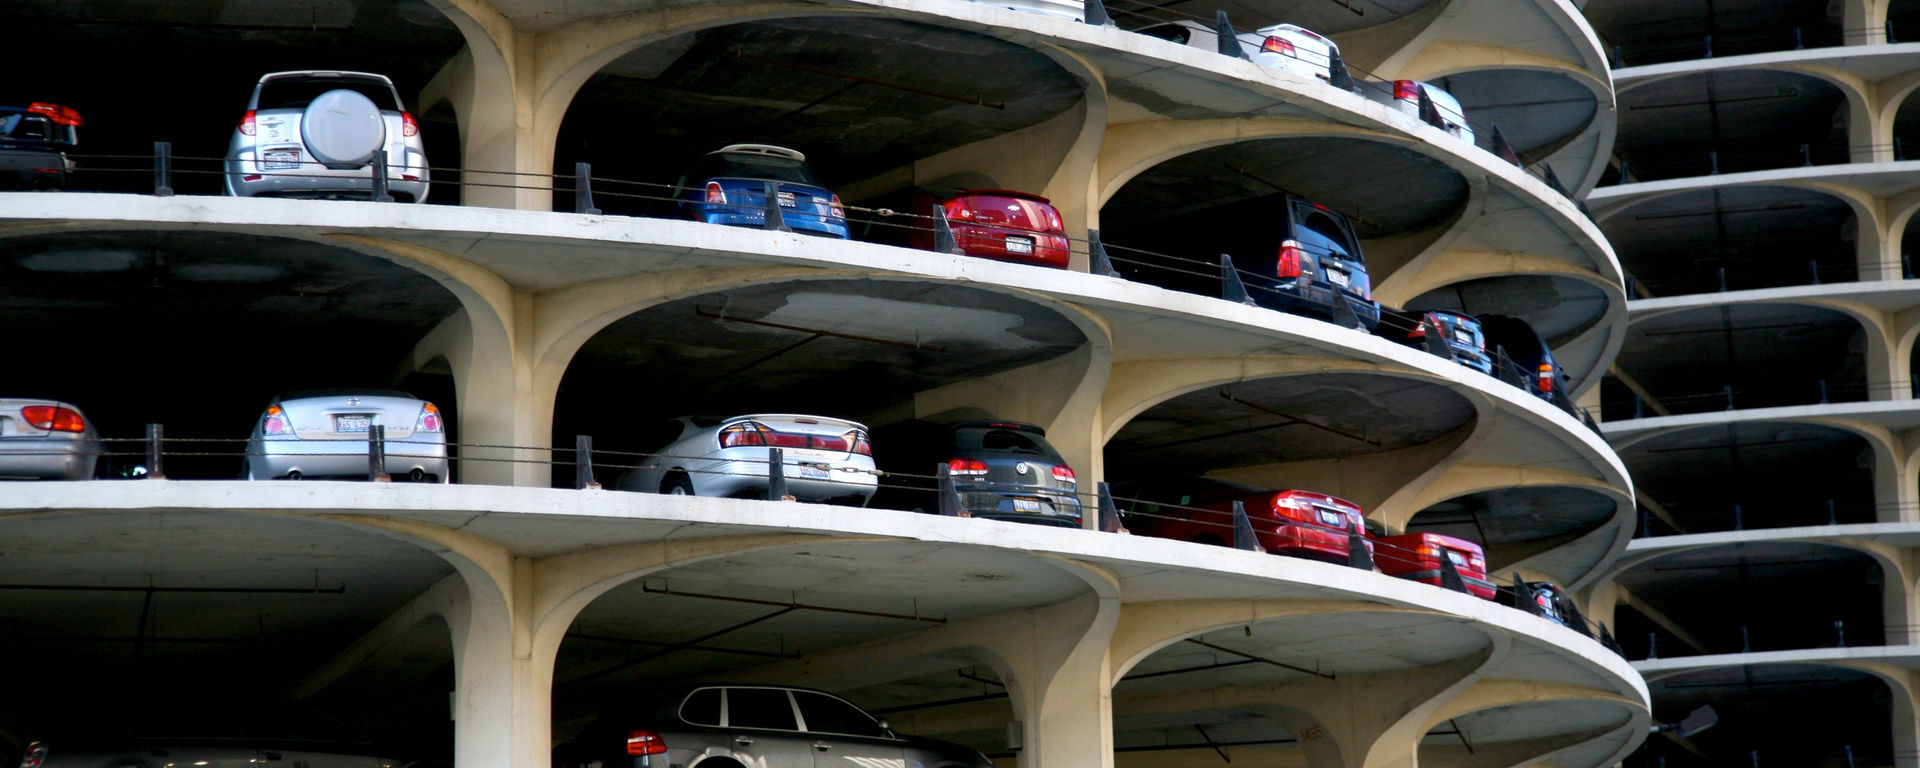 Parkhaus von außen mit vielen Autos